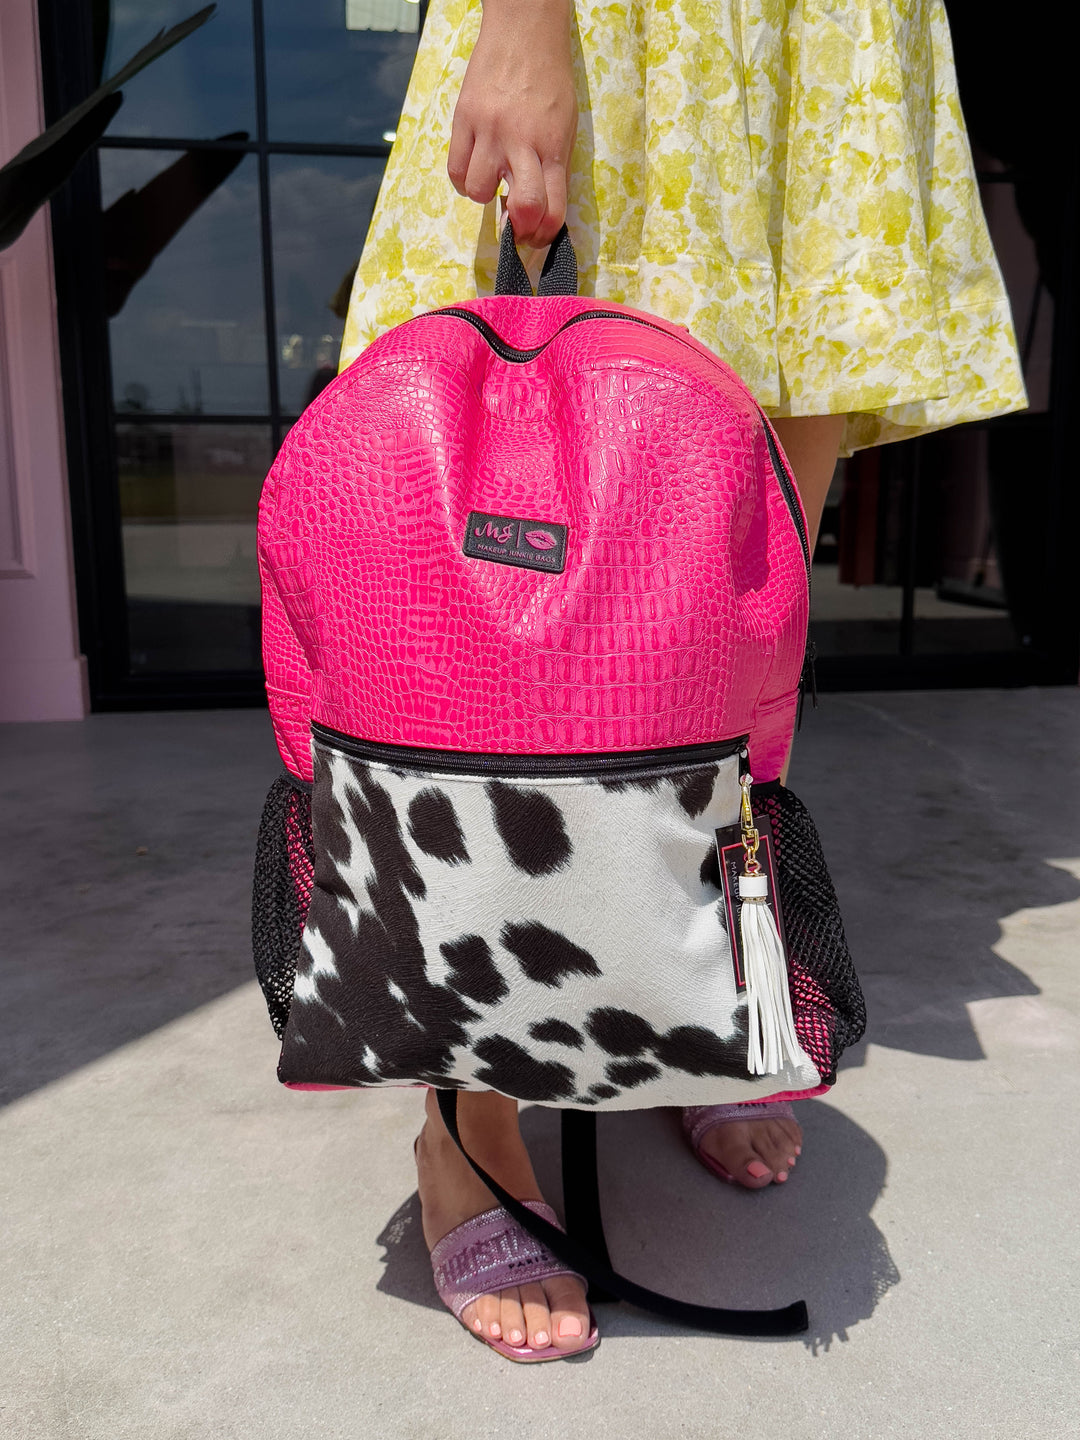 Victoria's Secret Pink/Black Leopard Cosmetic Bag/Pouch